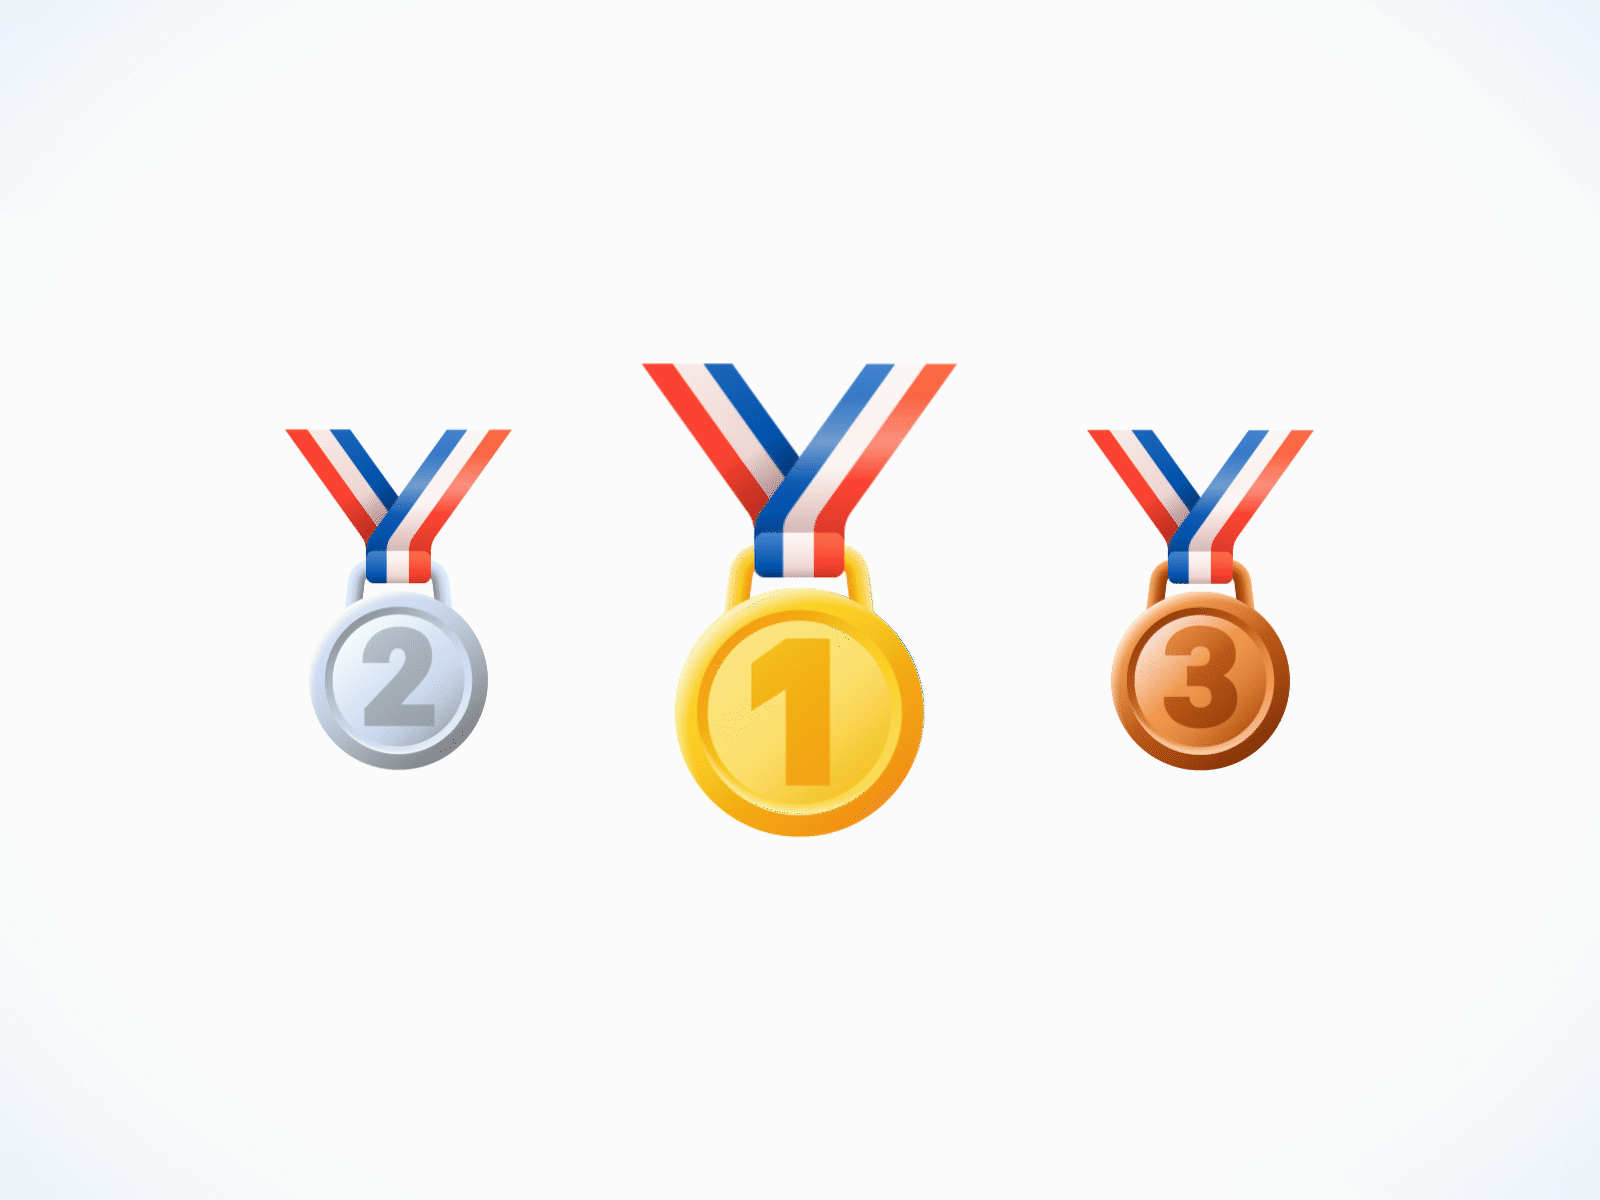 Awards and Medals Emoji award design emoji emoji set flat icon icon set illustration illustrator medal sport ui ux vector web